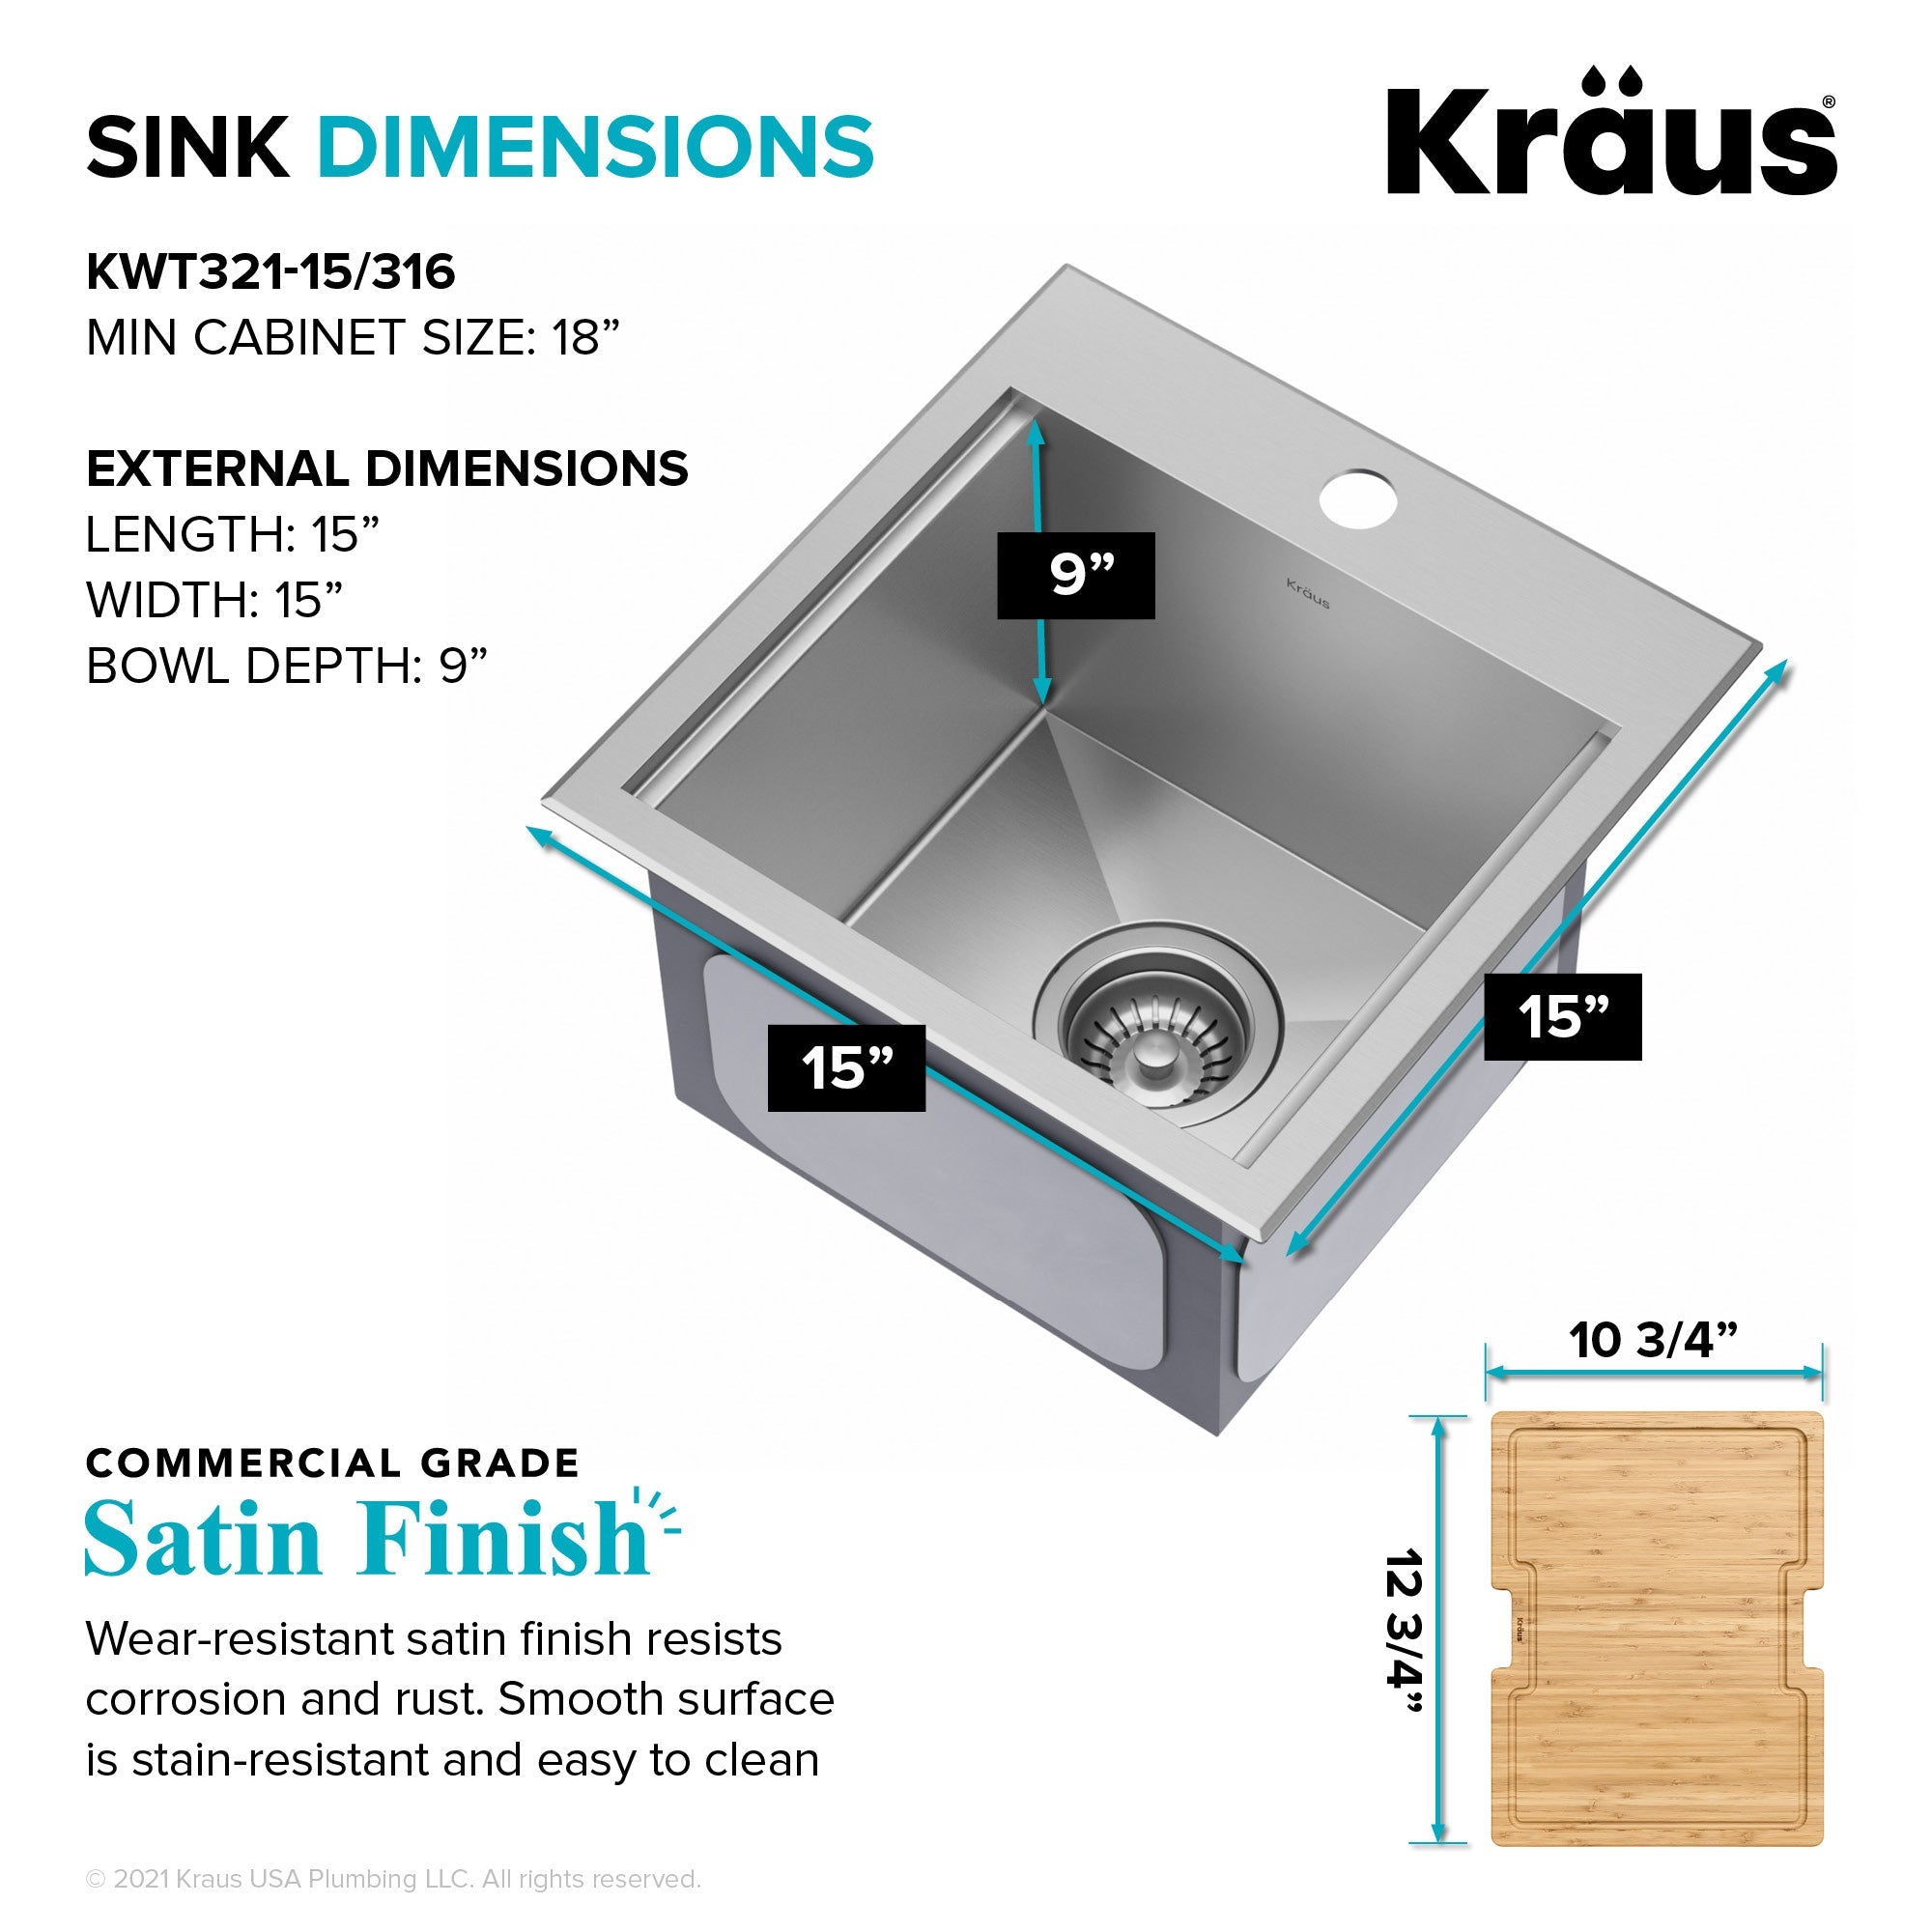 KRAUS 15"x 15" Outdoor Marine Grade Workstation Drop-In T316 Stainless Steel Bar Sink